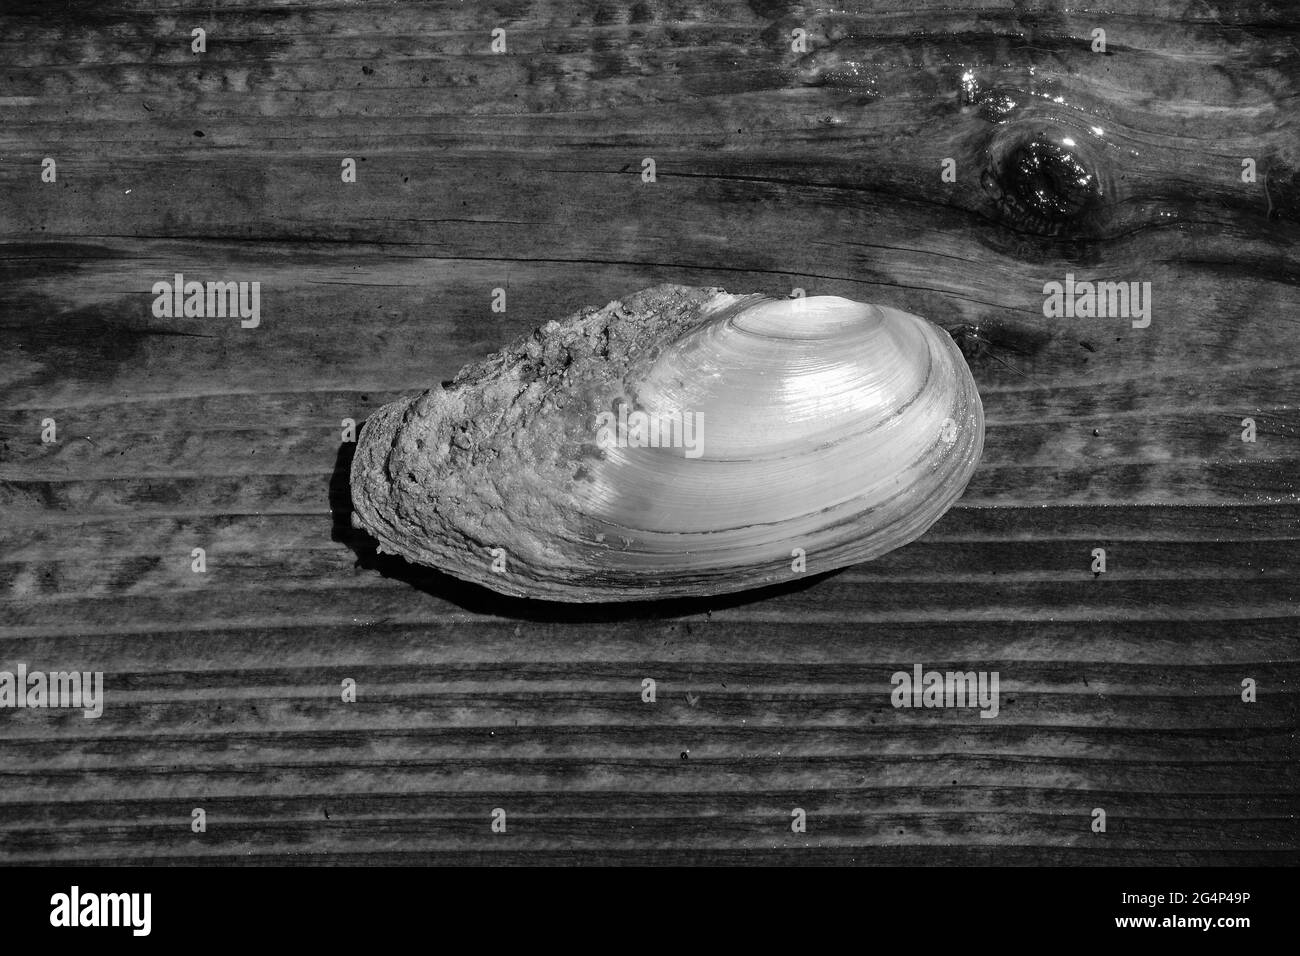 Colpo in scala di grigi di un mollusco senza denti Foto Stock